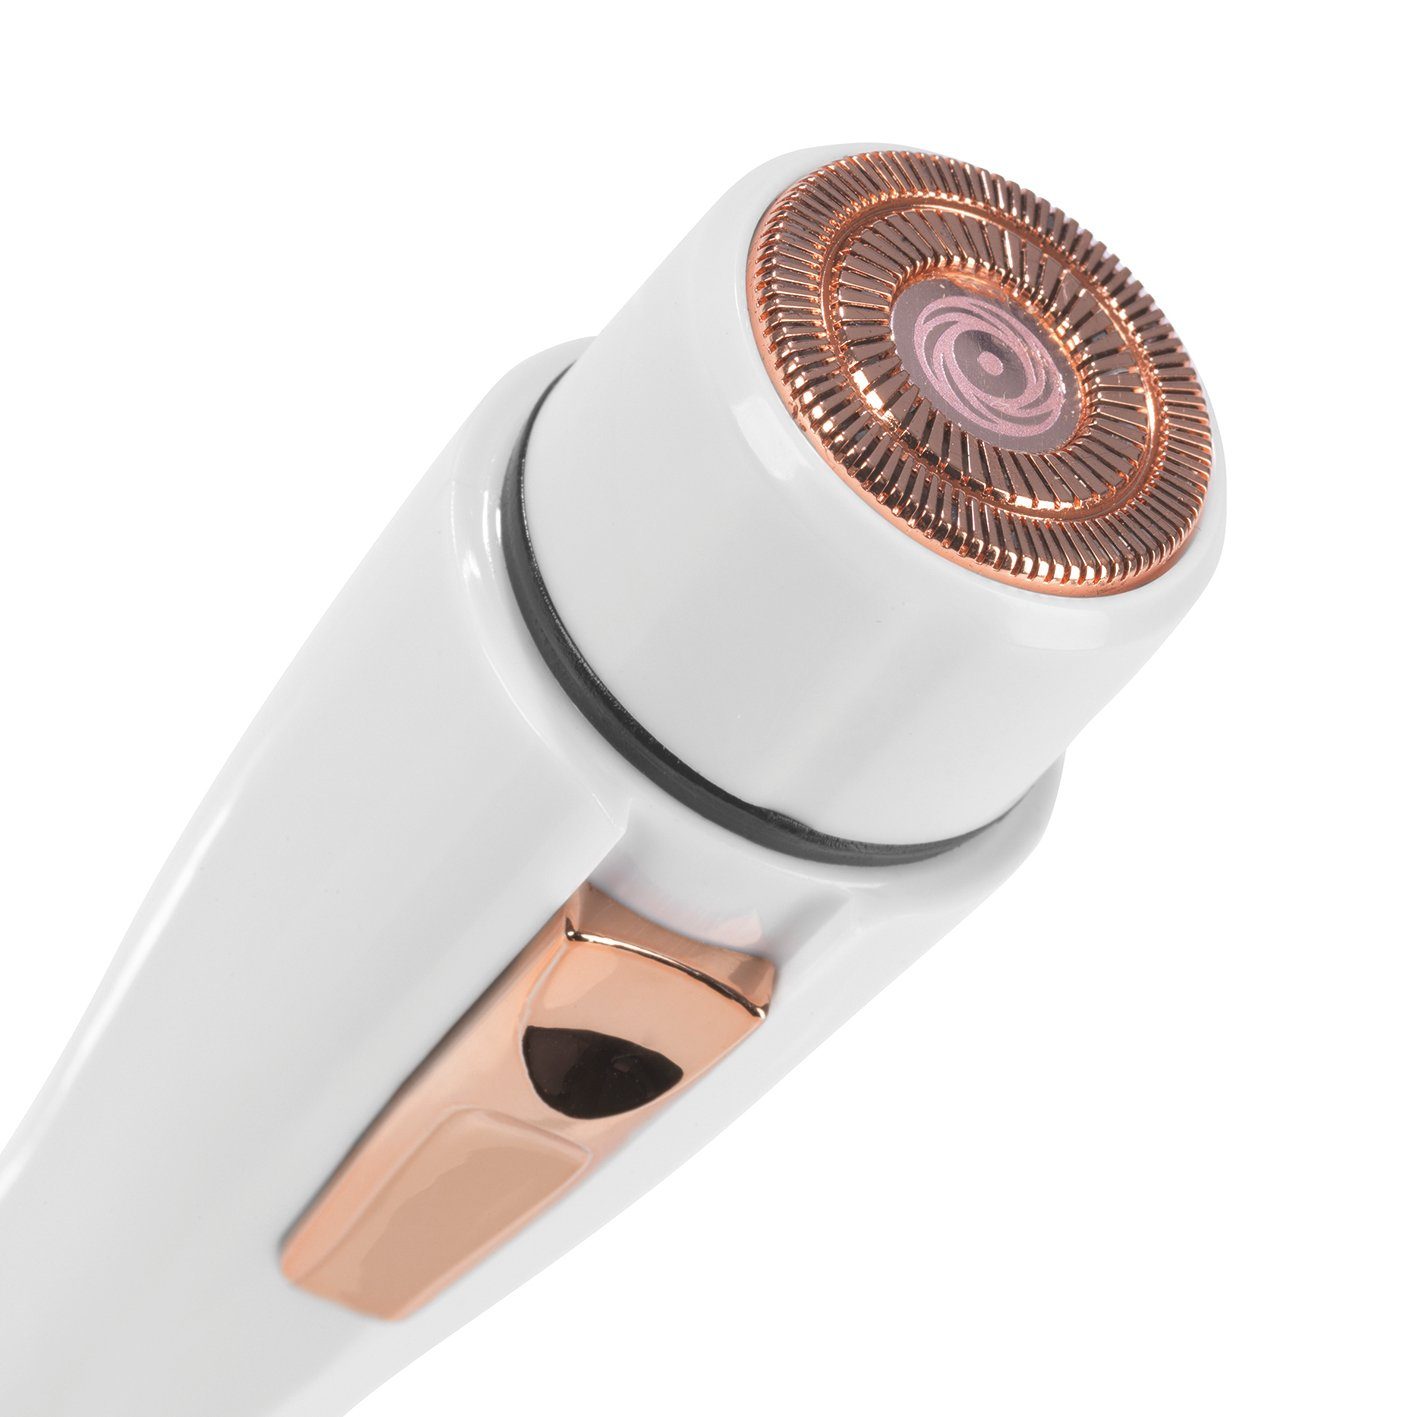 Shave MAXXMEE USB-Kabel Haarentfernungsgerät Haarentferner MAXXMEE weiß/rosegold inkl. Perfect -